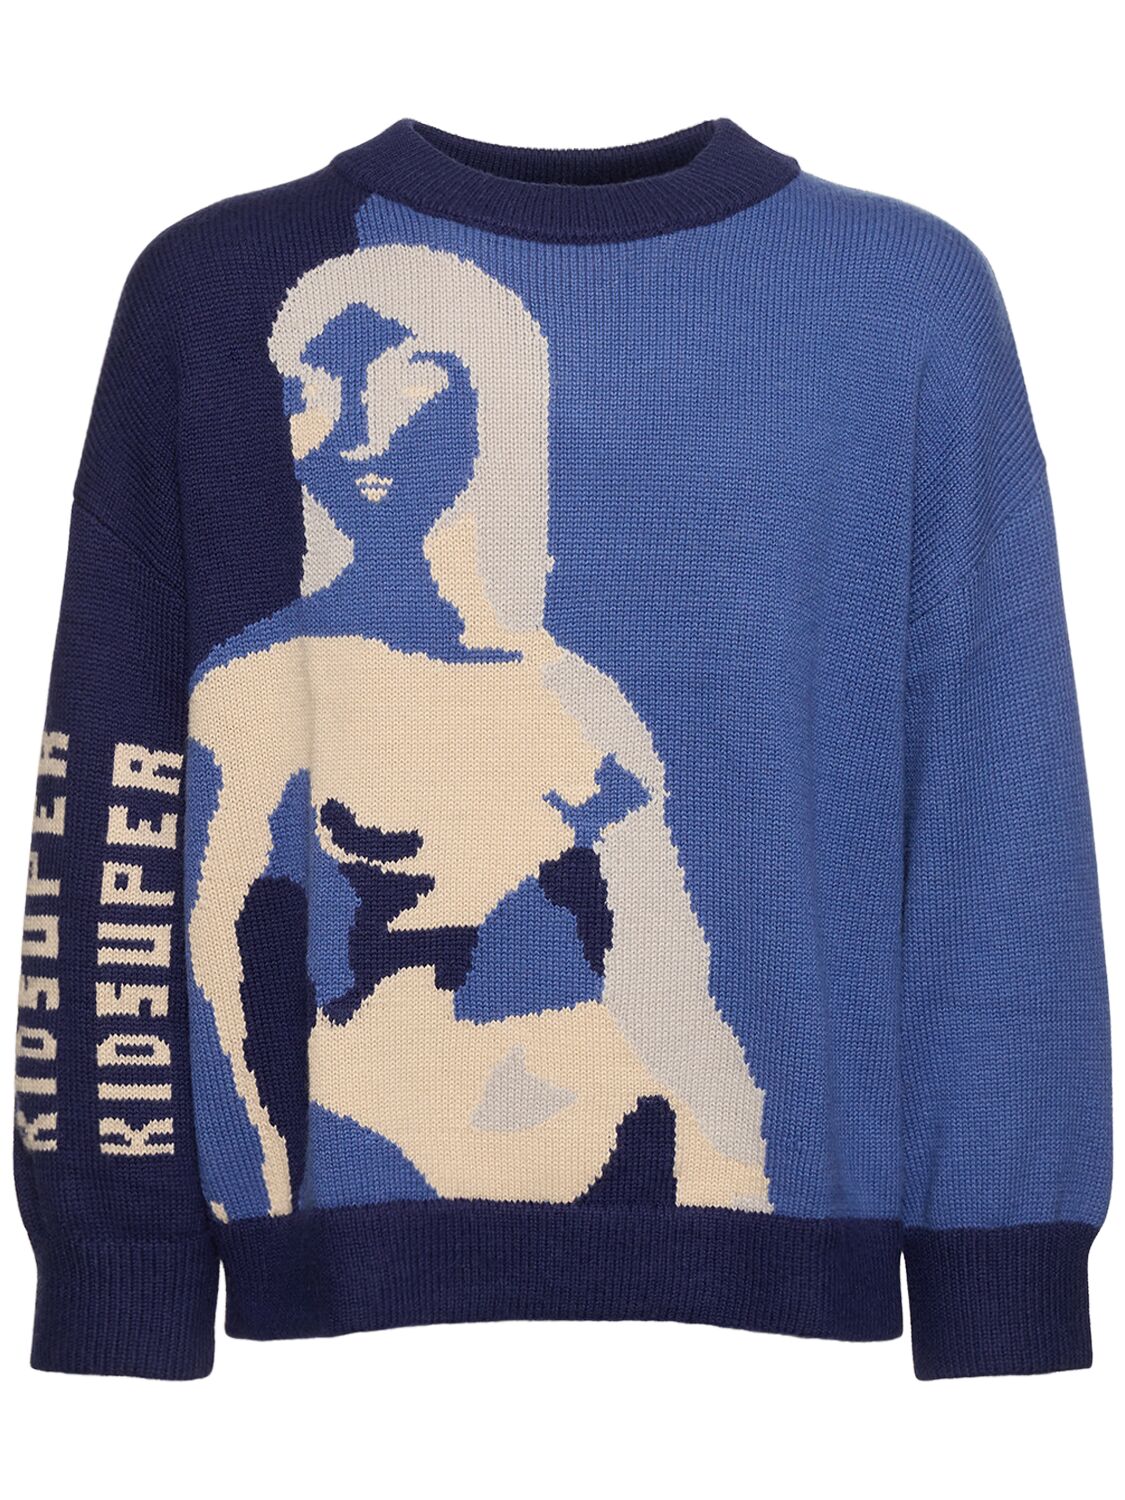 Kidsuper Wool High Neck Sweater In Blue,multi